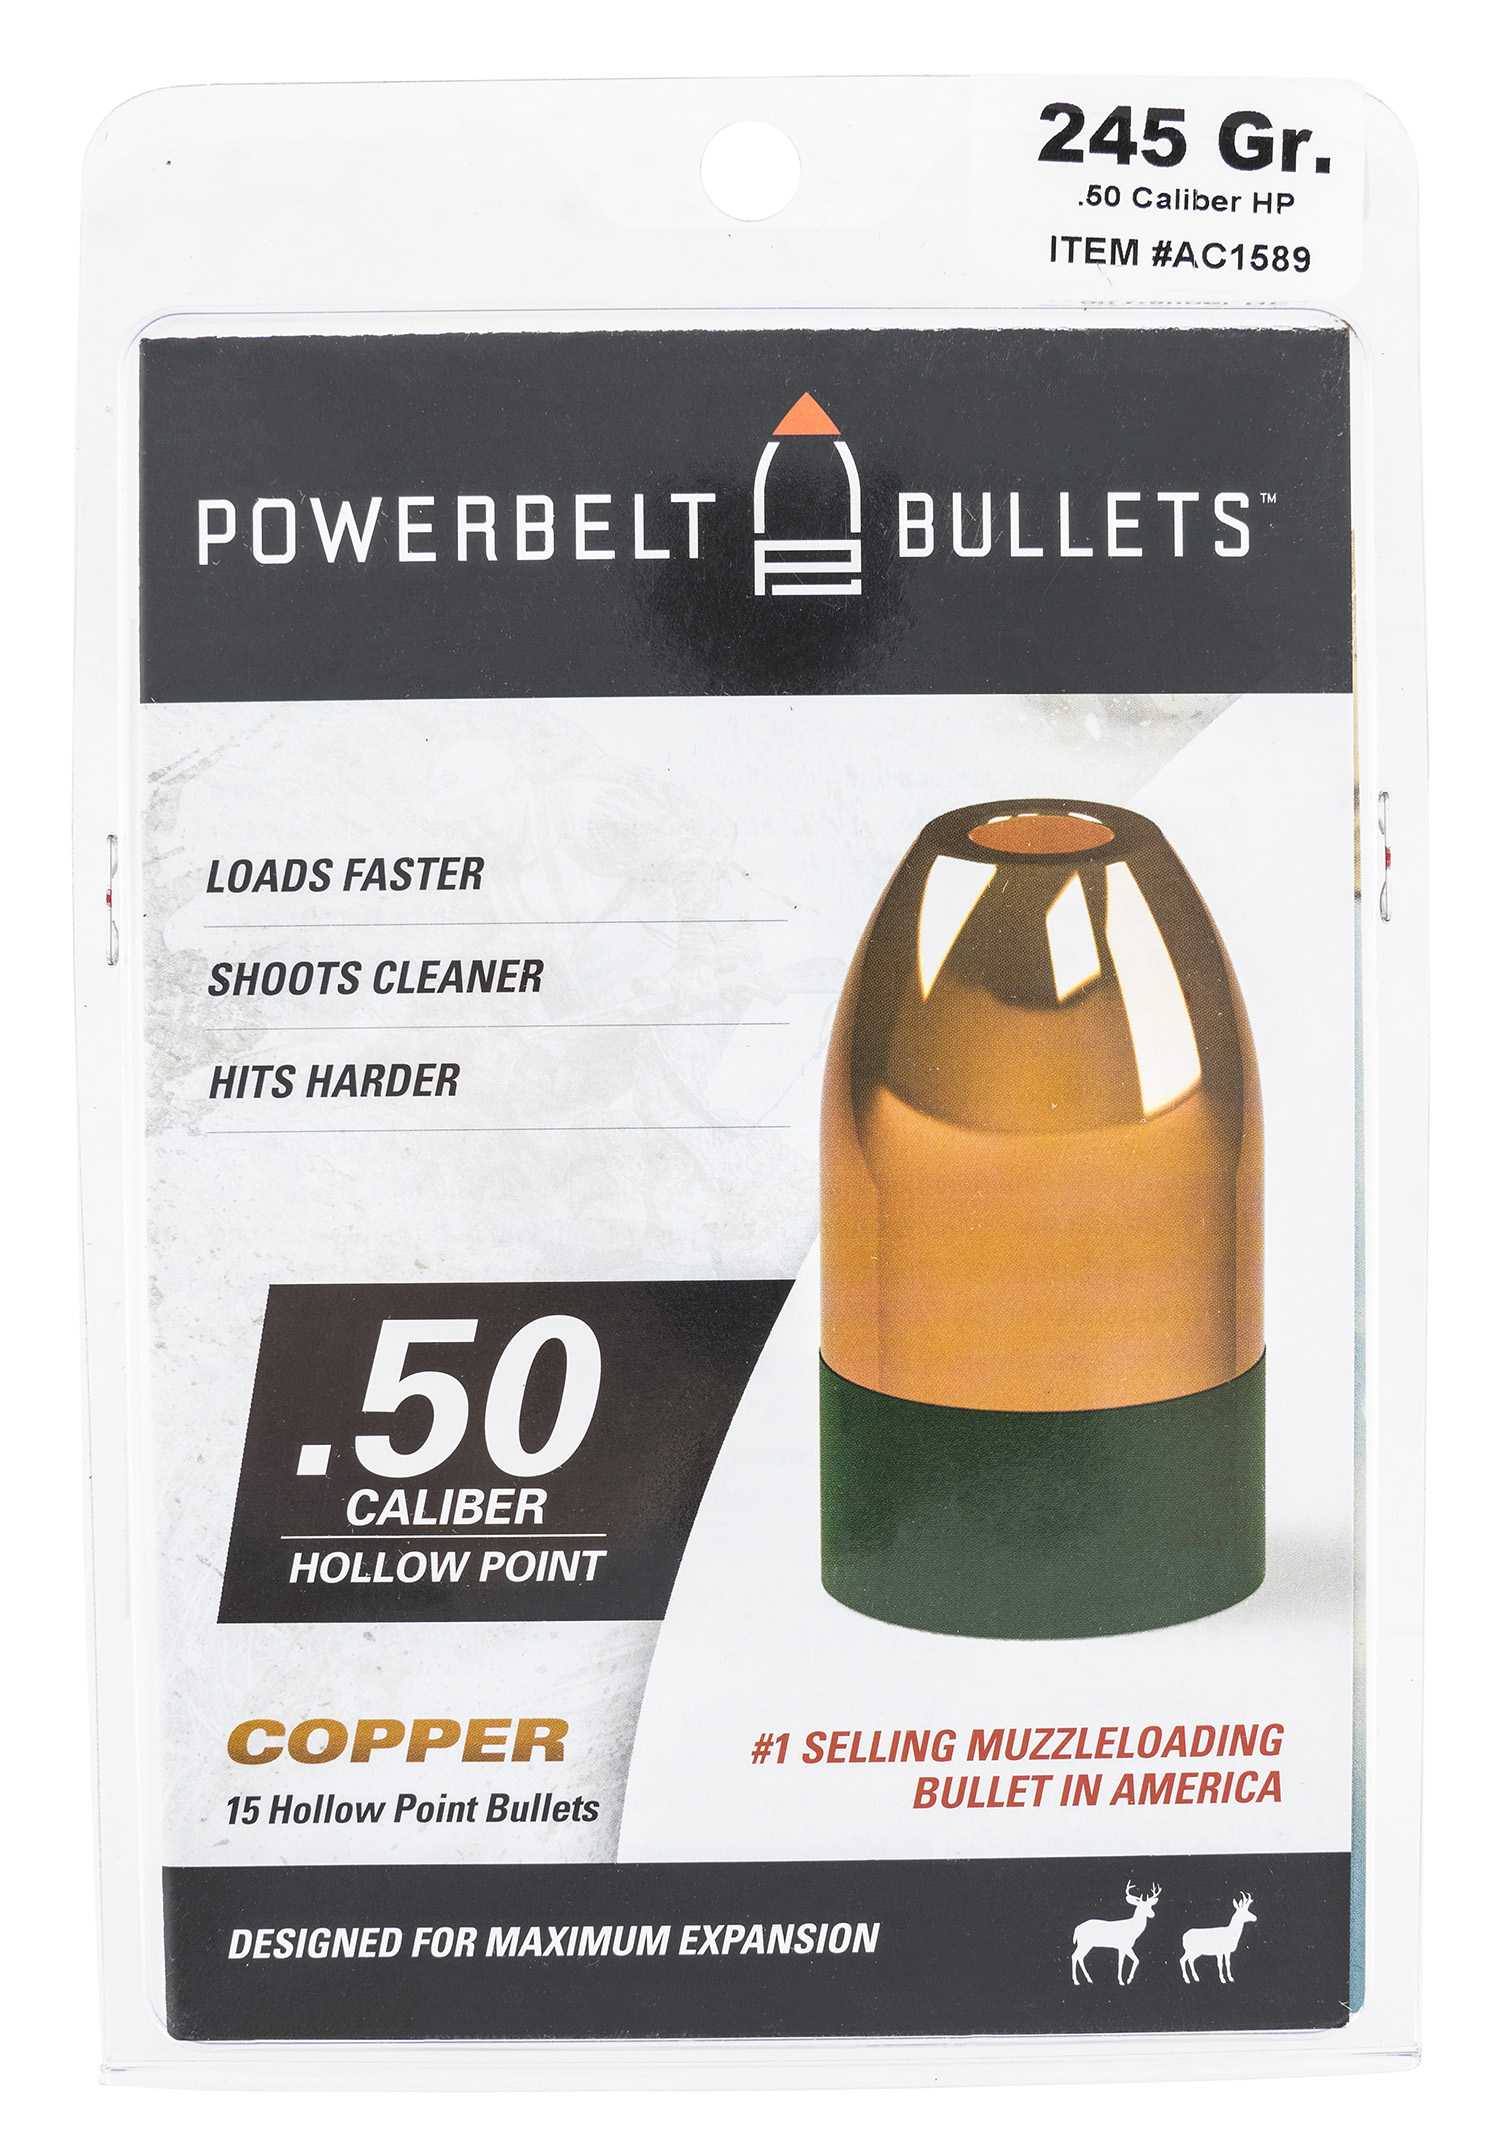 PowerBelt Bullets AC1589 Powerbelt Muzzleloader 50 Cal Hollow Point (HP) 245 gr 15